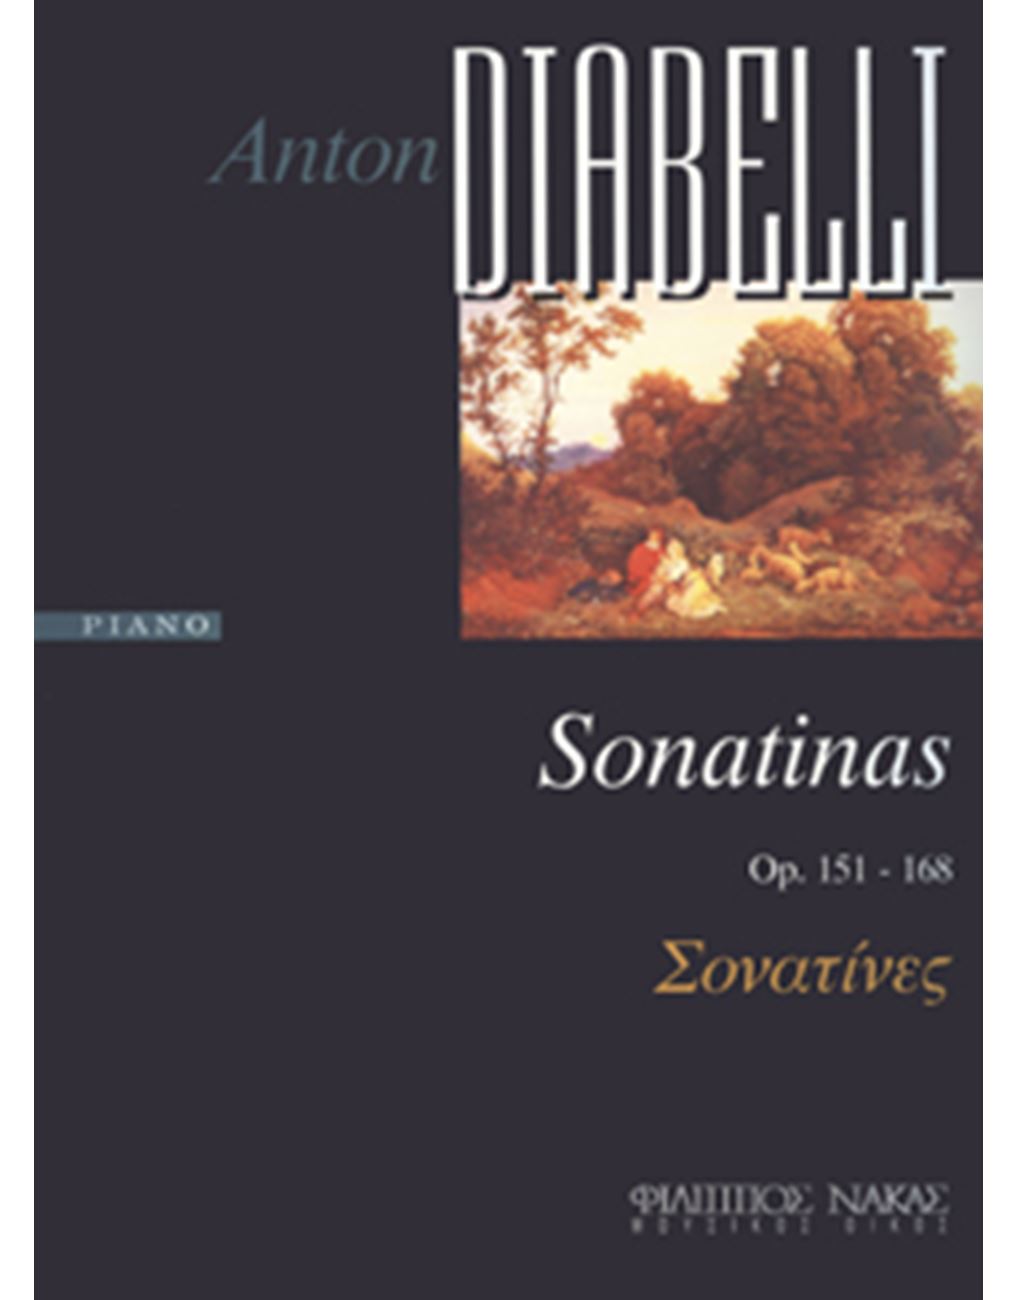 Diabelli Anton-Σονατίνες Op.151-168